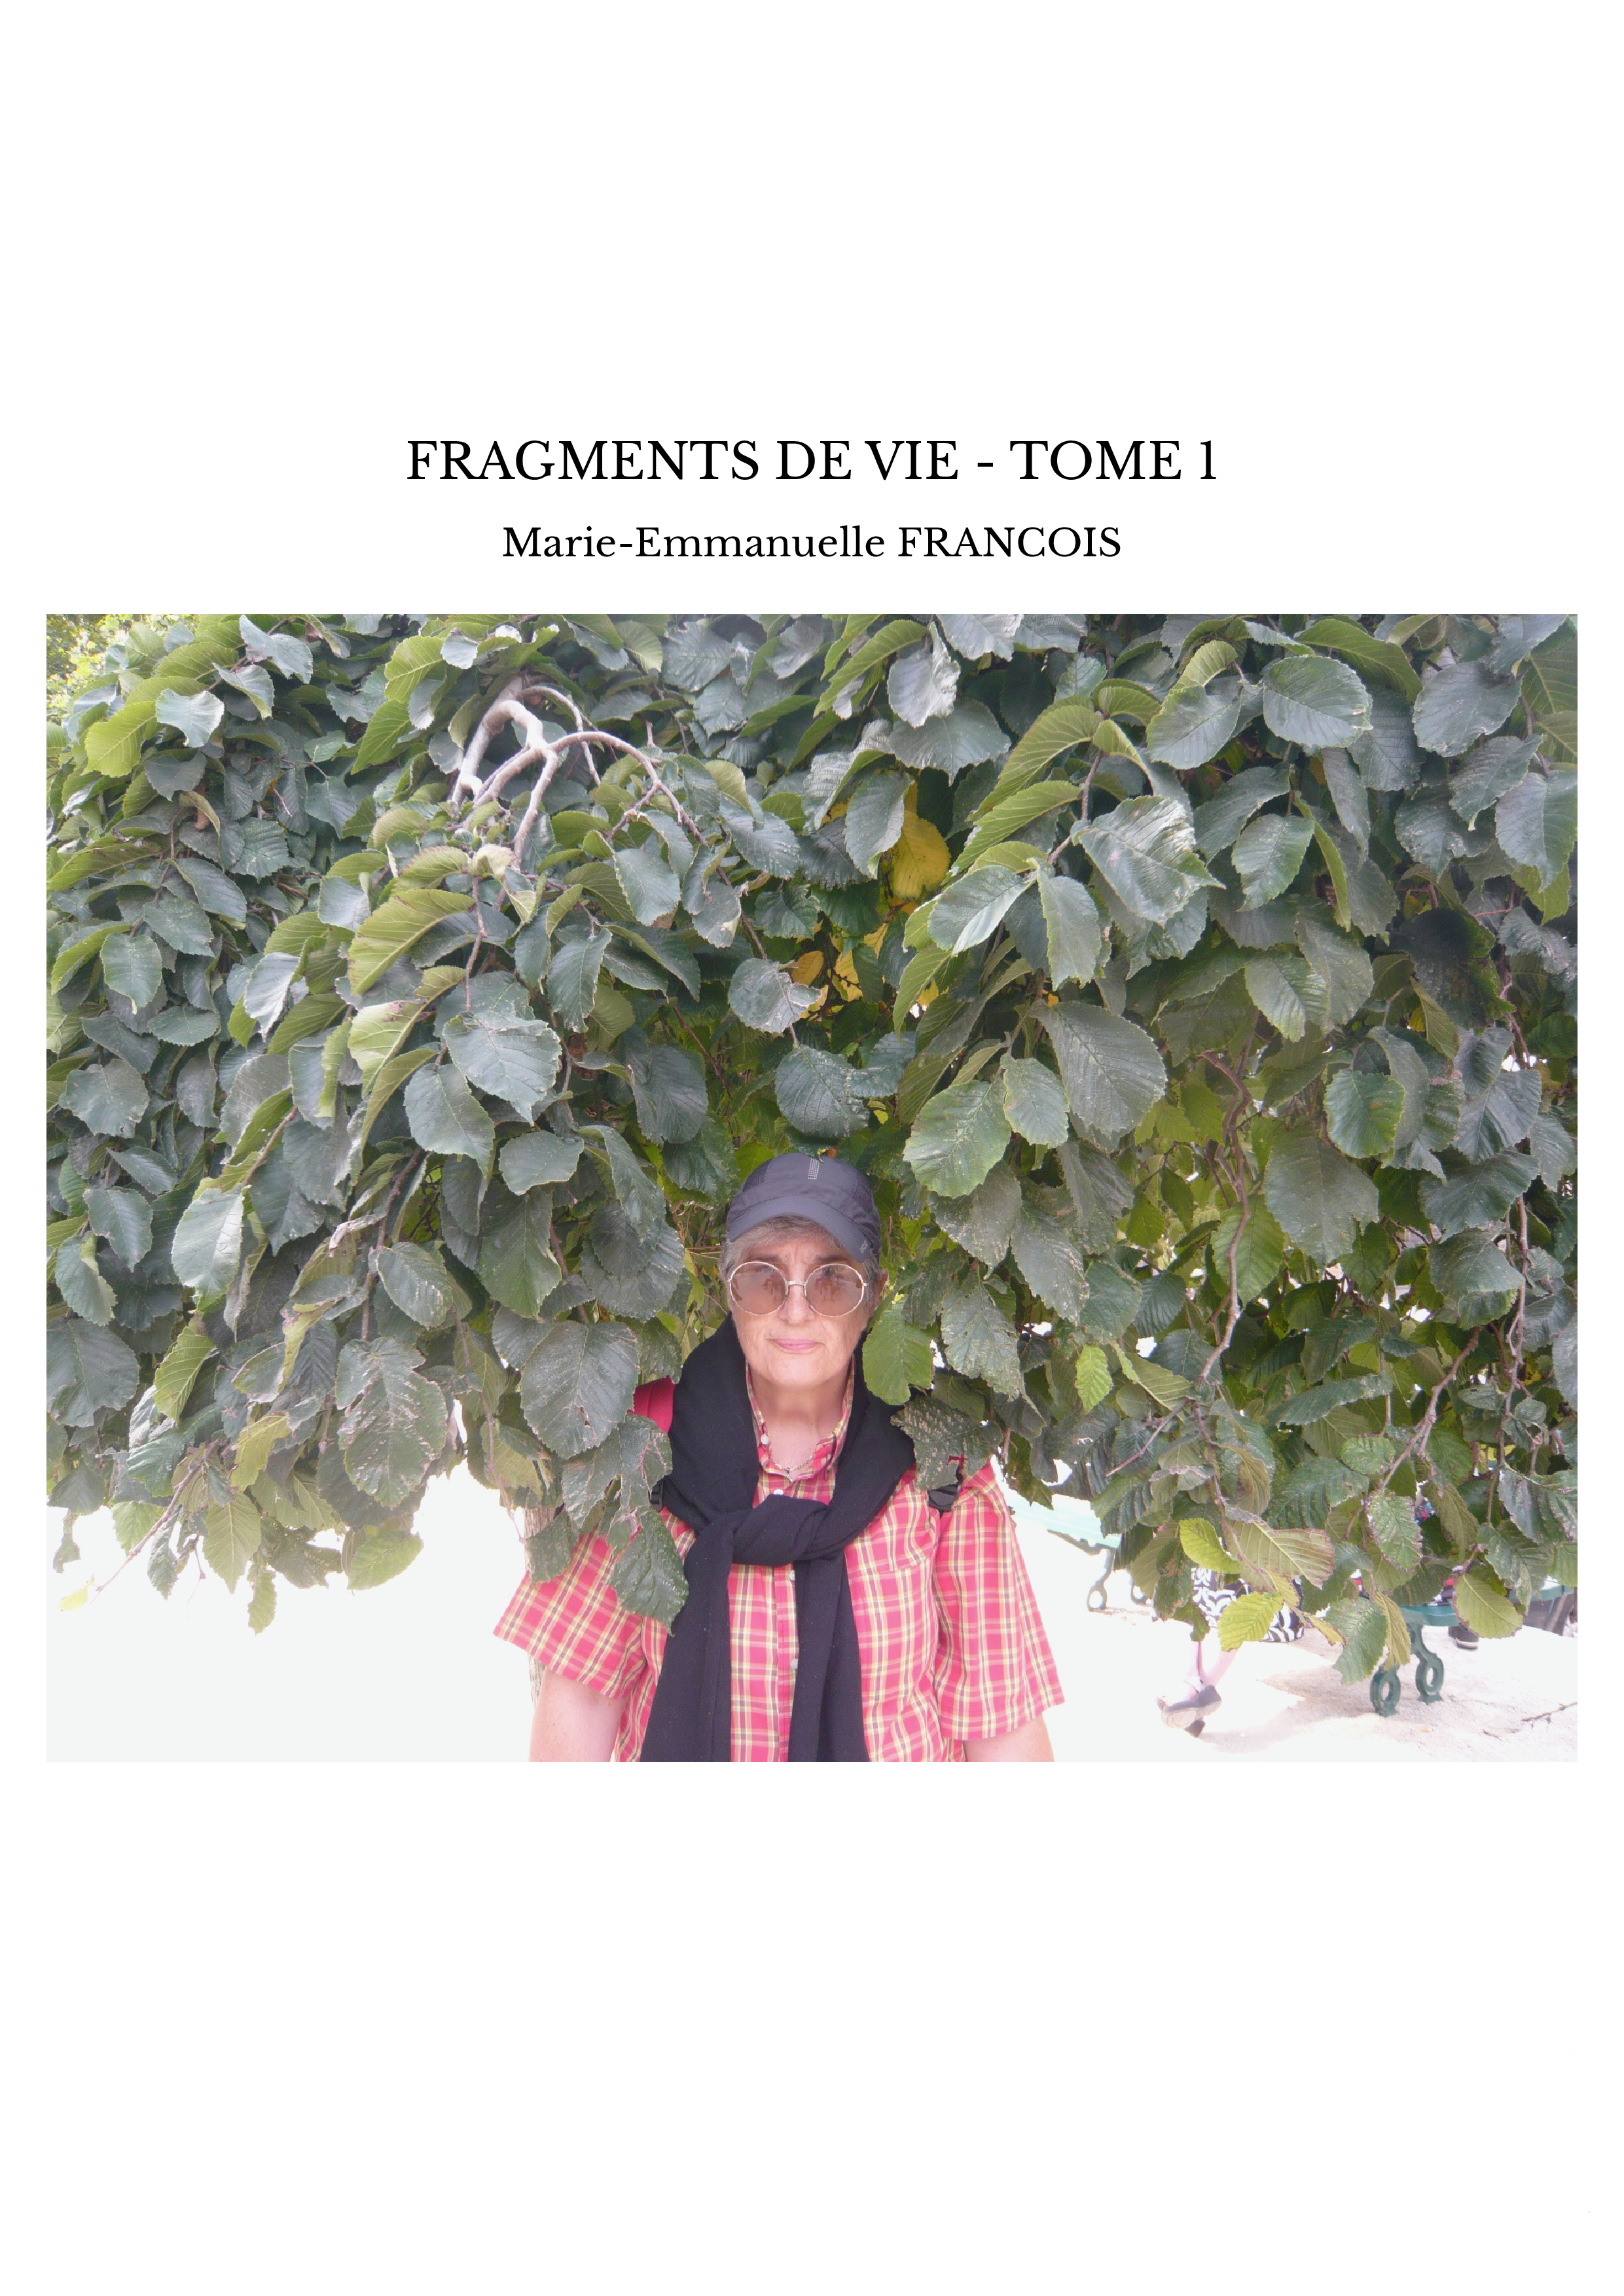 FRAGMENTS DE VIE - TOME 1